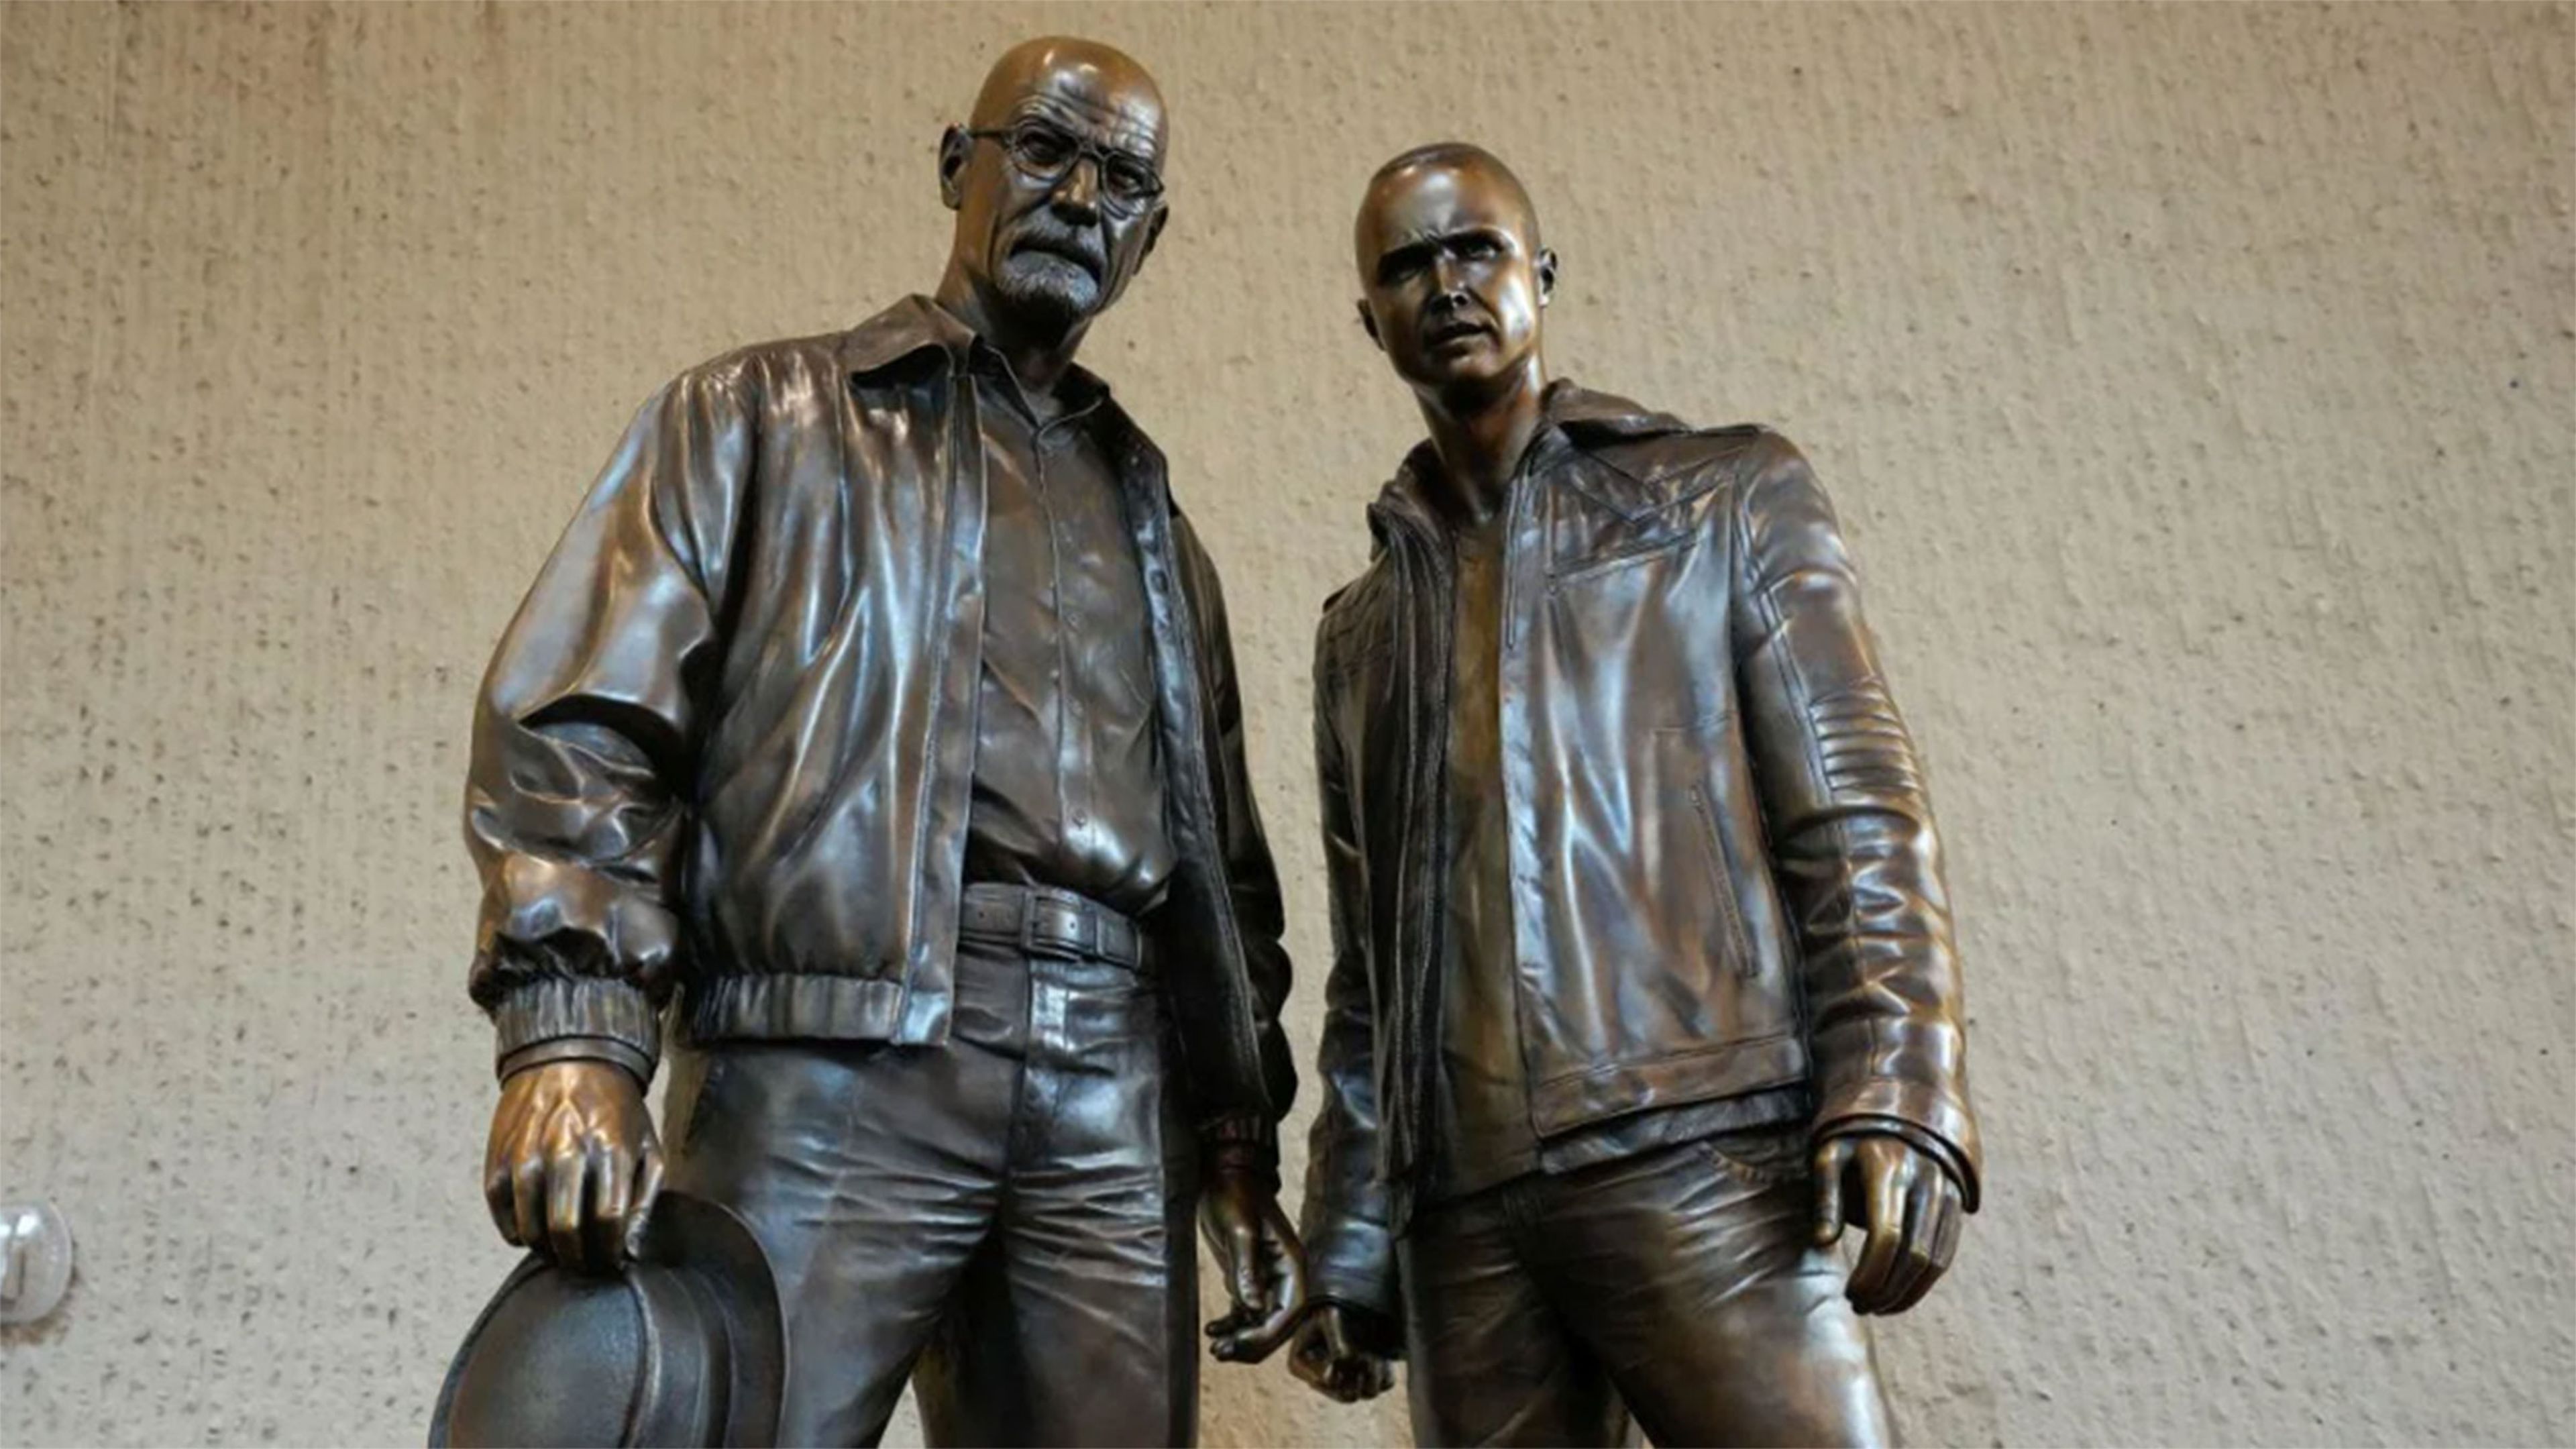 Los protagonistas de Breaking Bad inmortalizados en dos estatuas de bronce en la ciudad de Albuquerque